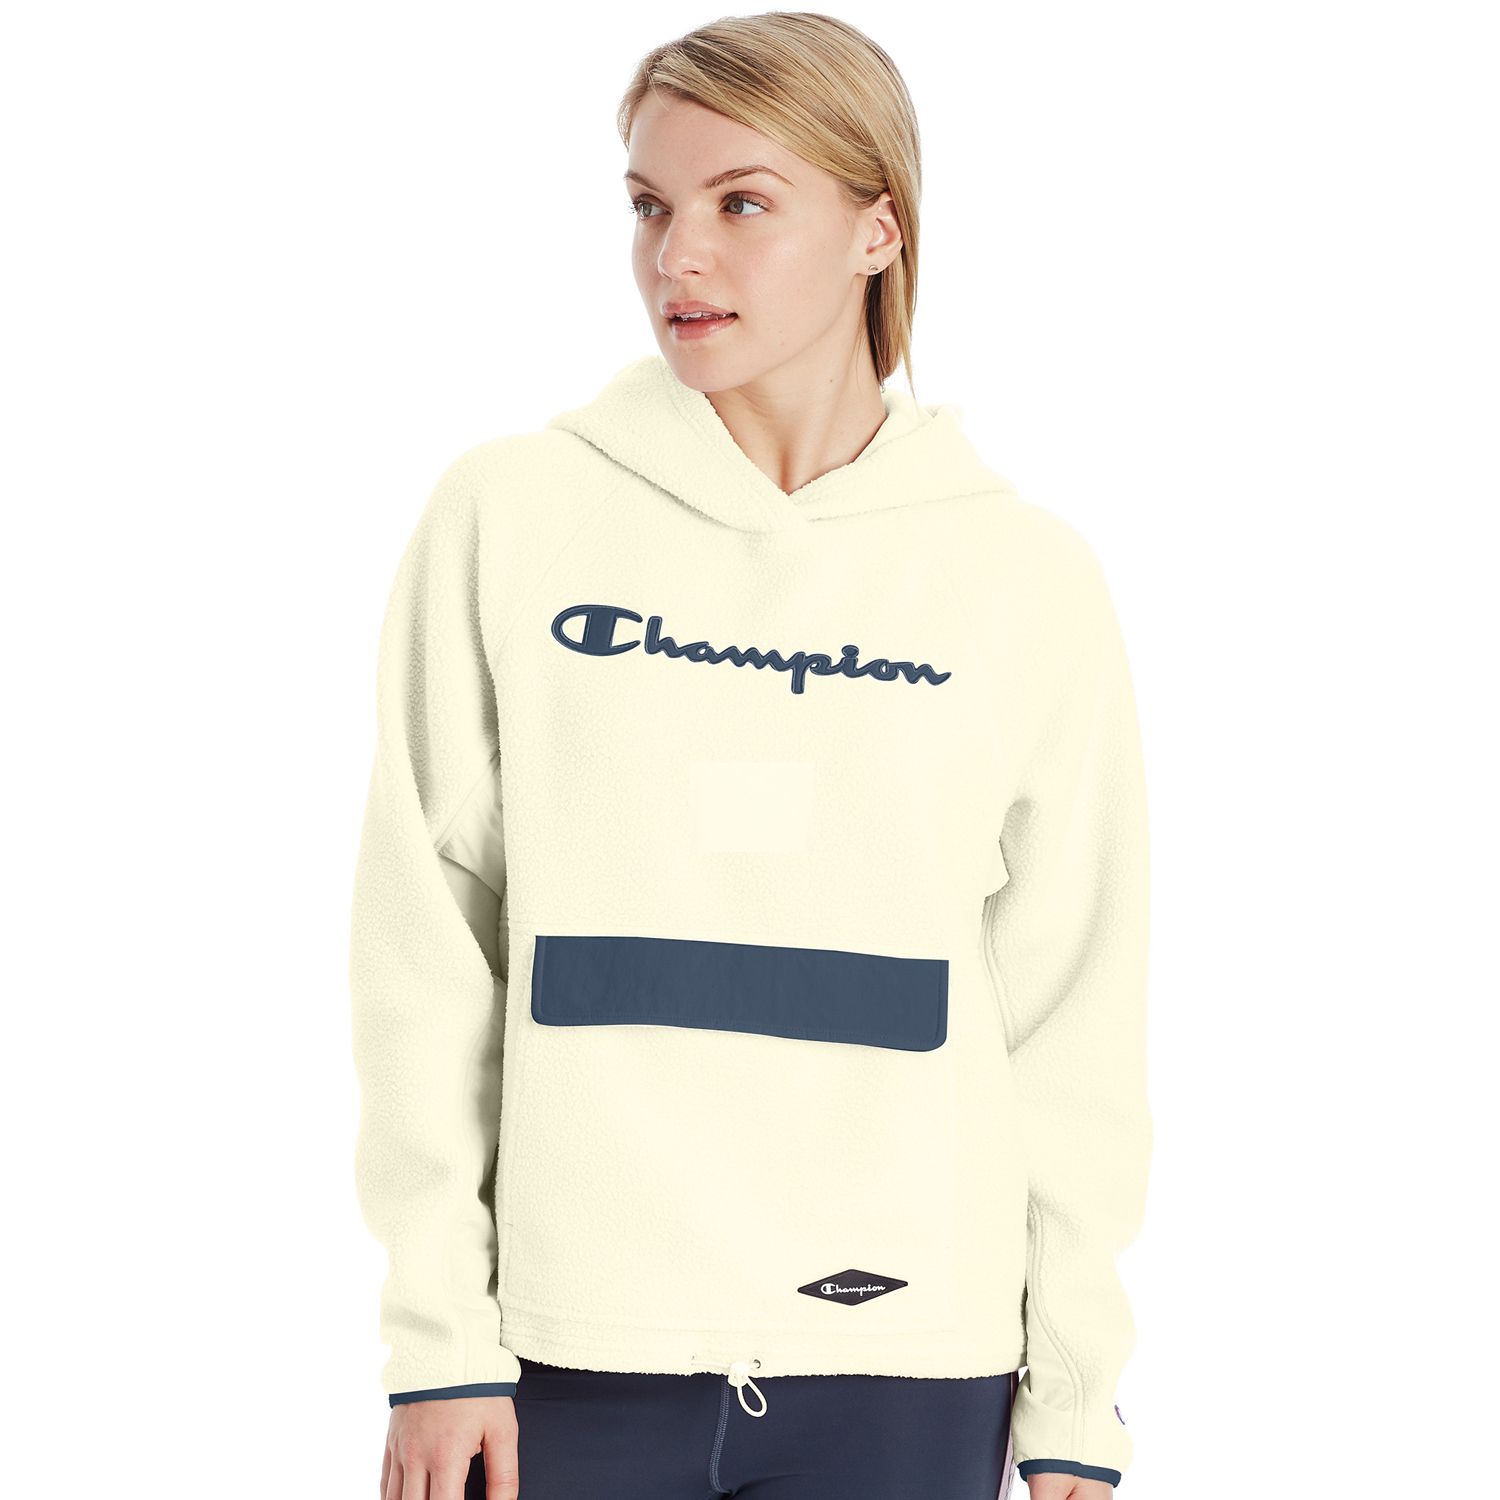 sherpa champion sweater